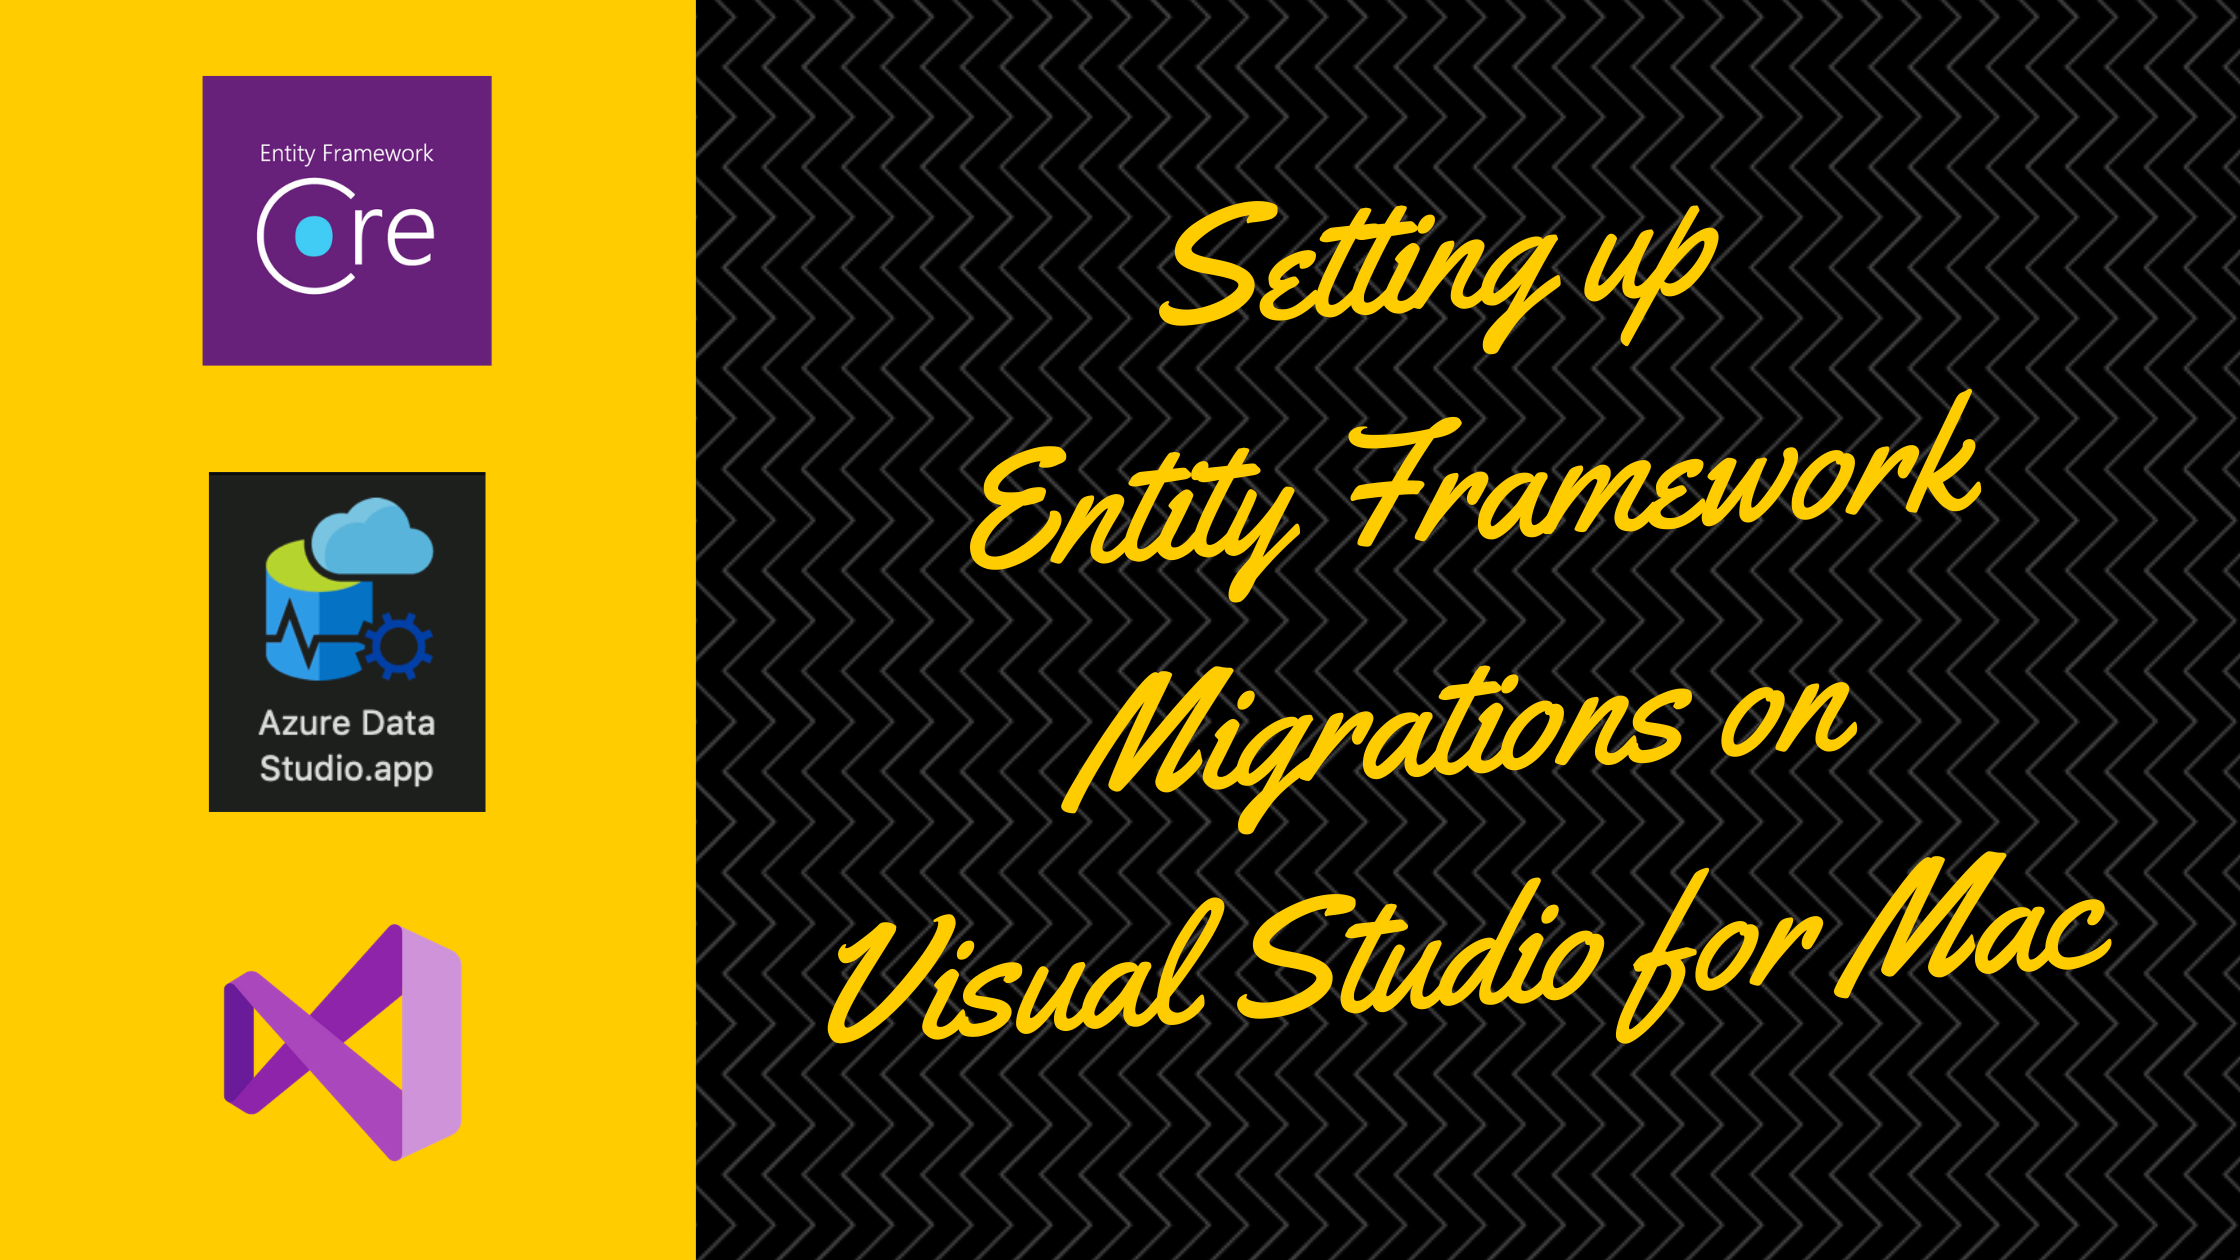 visual studio for mac migrations